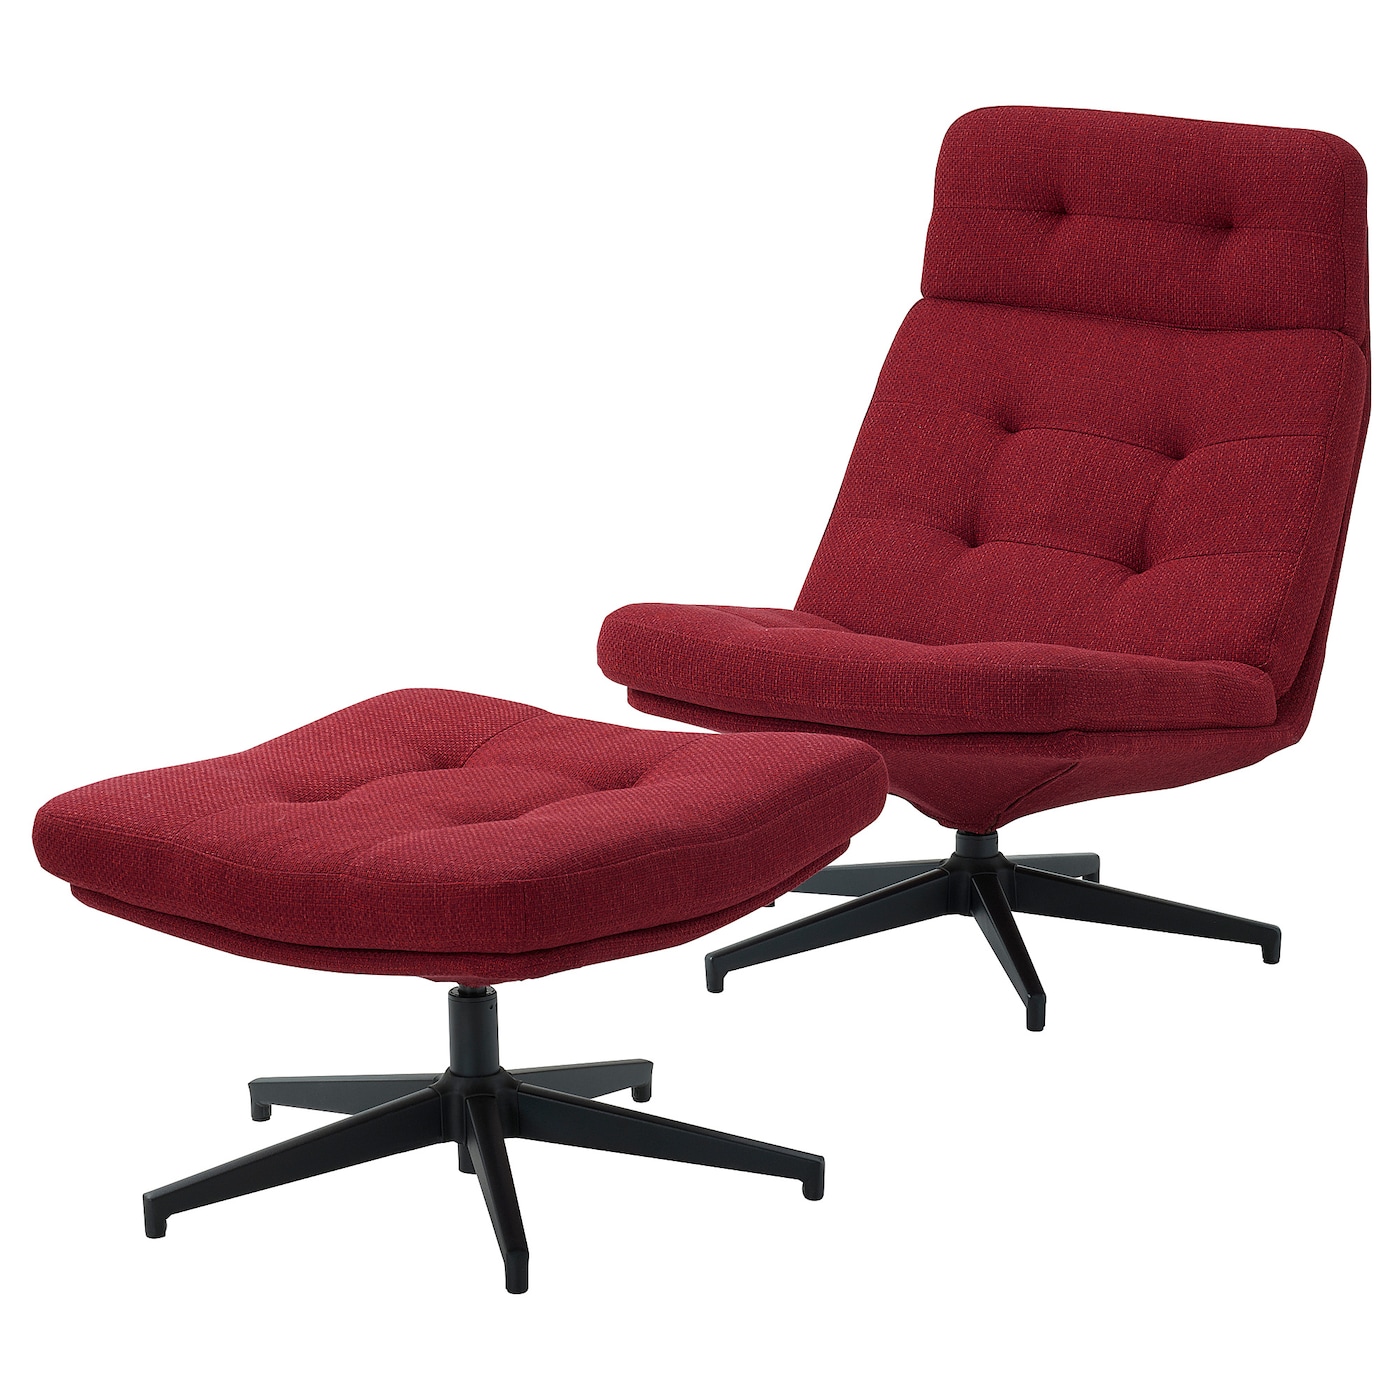 ХАВБЕРГ Кресло и подставка для ног, Лейде красный/коричневый HAVBERG IKEA